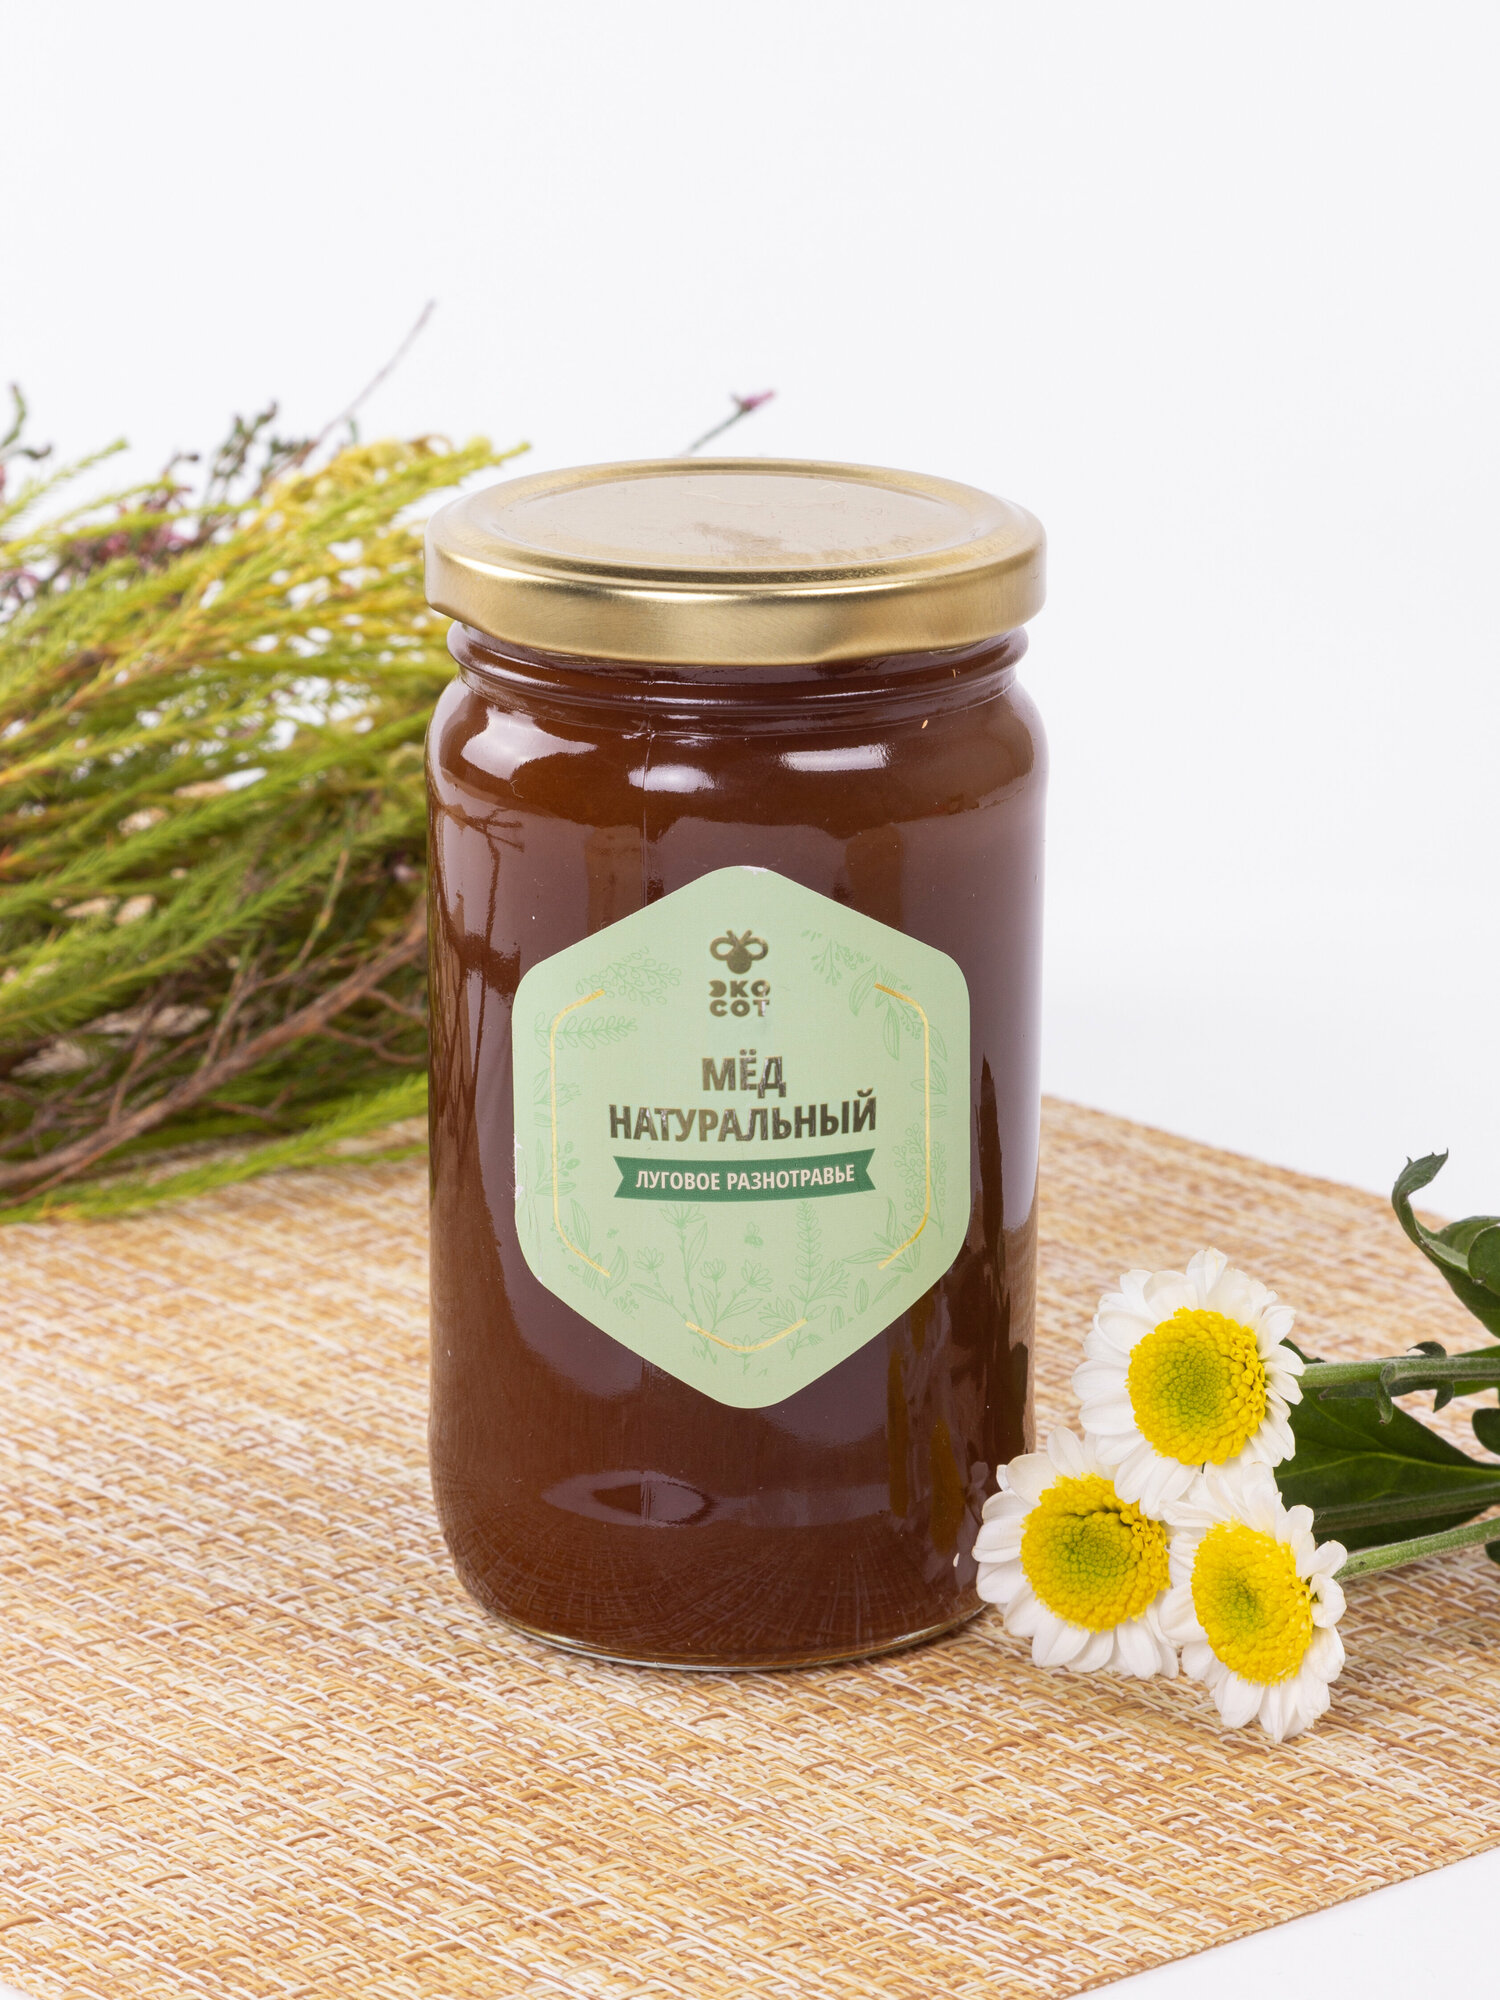 Мёд натуральный "Эко-Сот" Луговое разнотравье 500г.